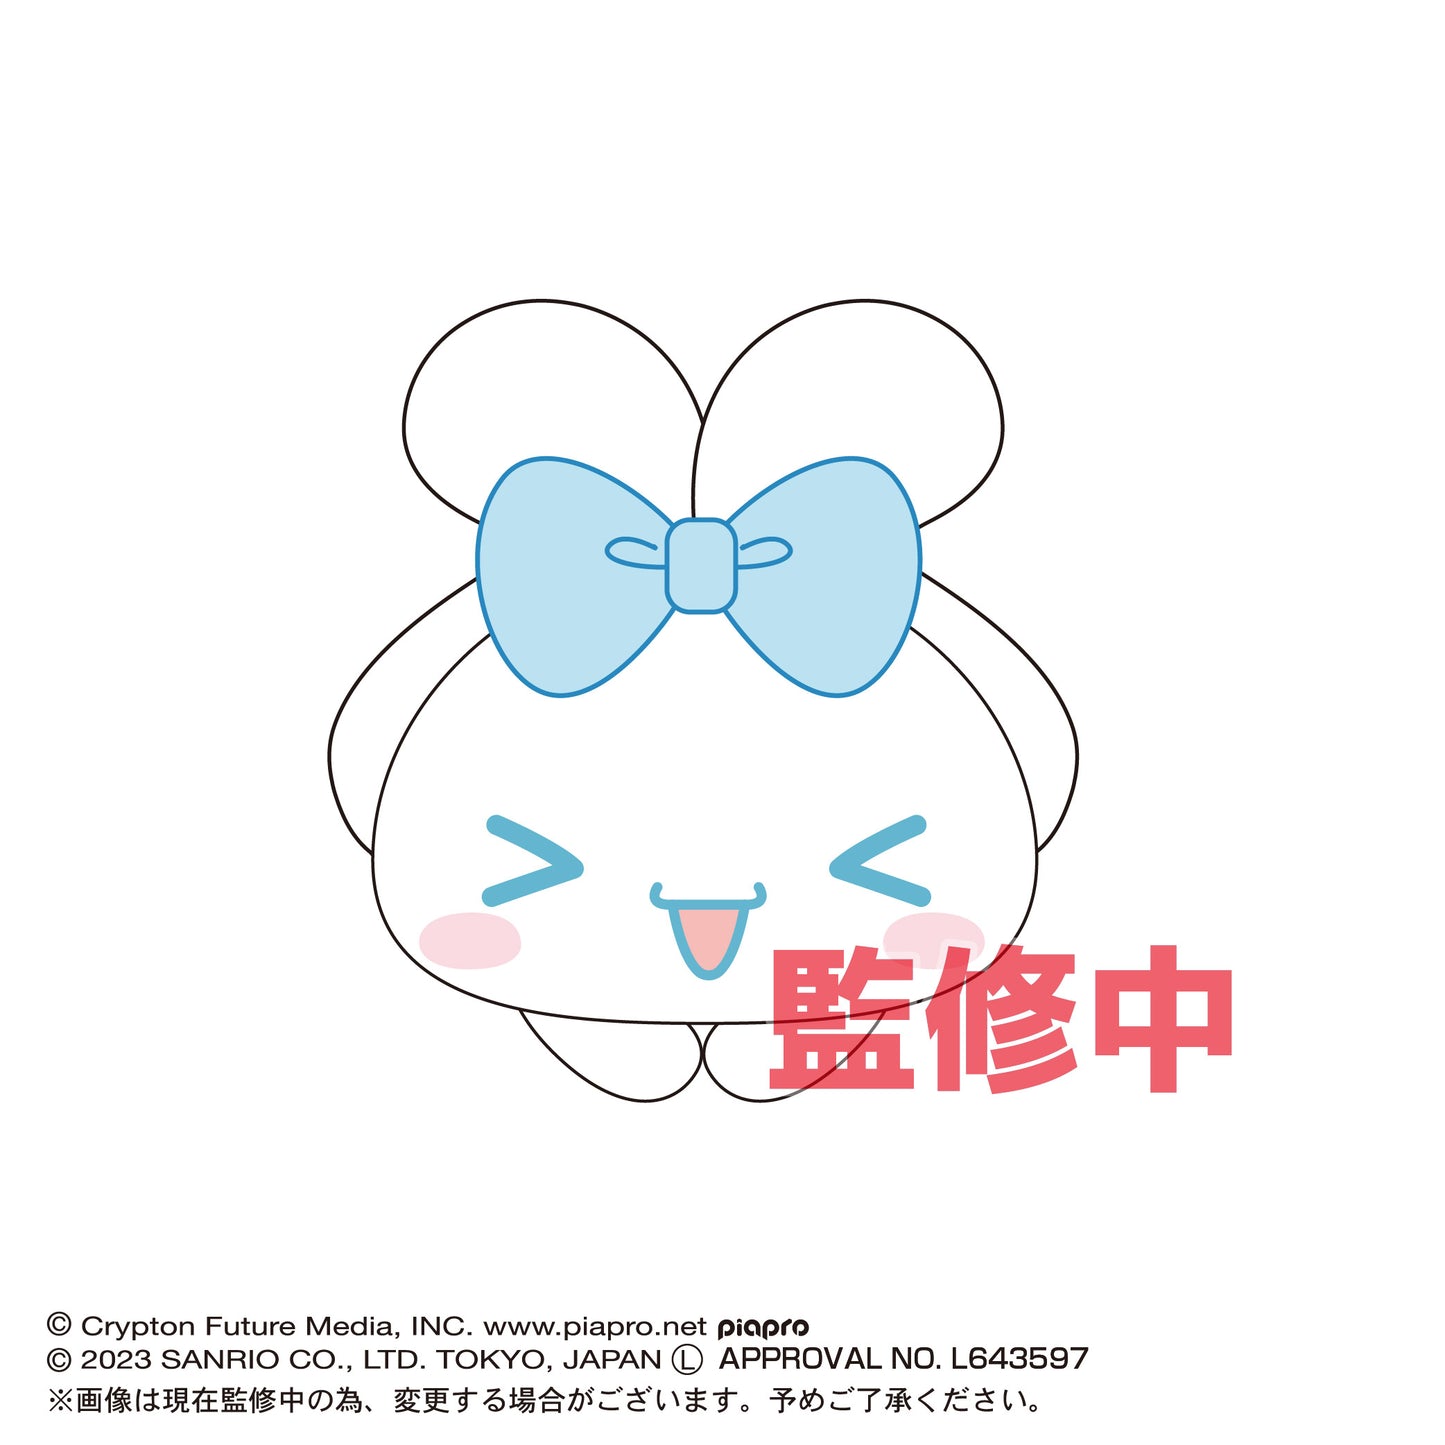 (Pre-Order) MC-02 Hatsune Miku x Cinnamoroll Hug x Character Collection - Small Plushy